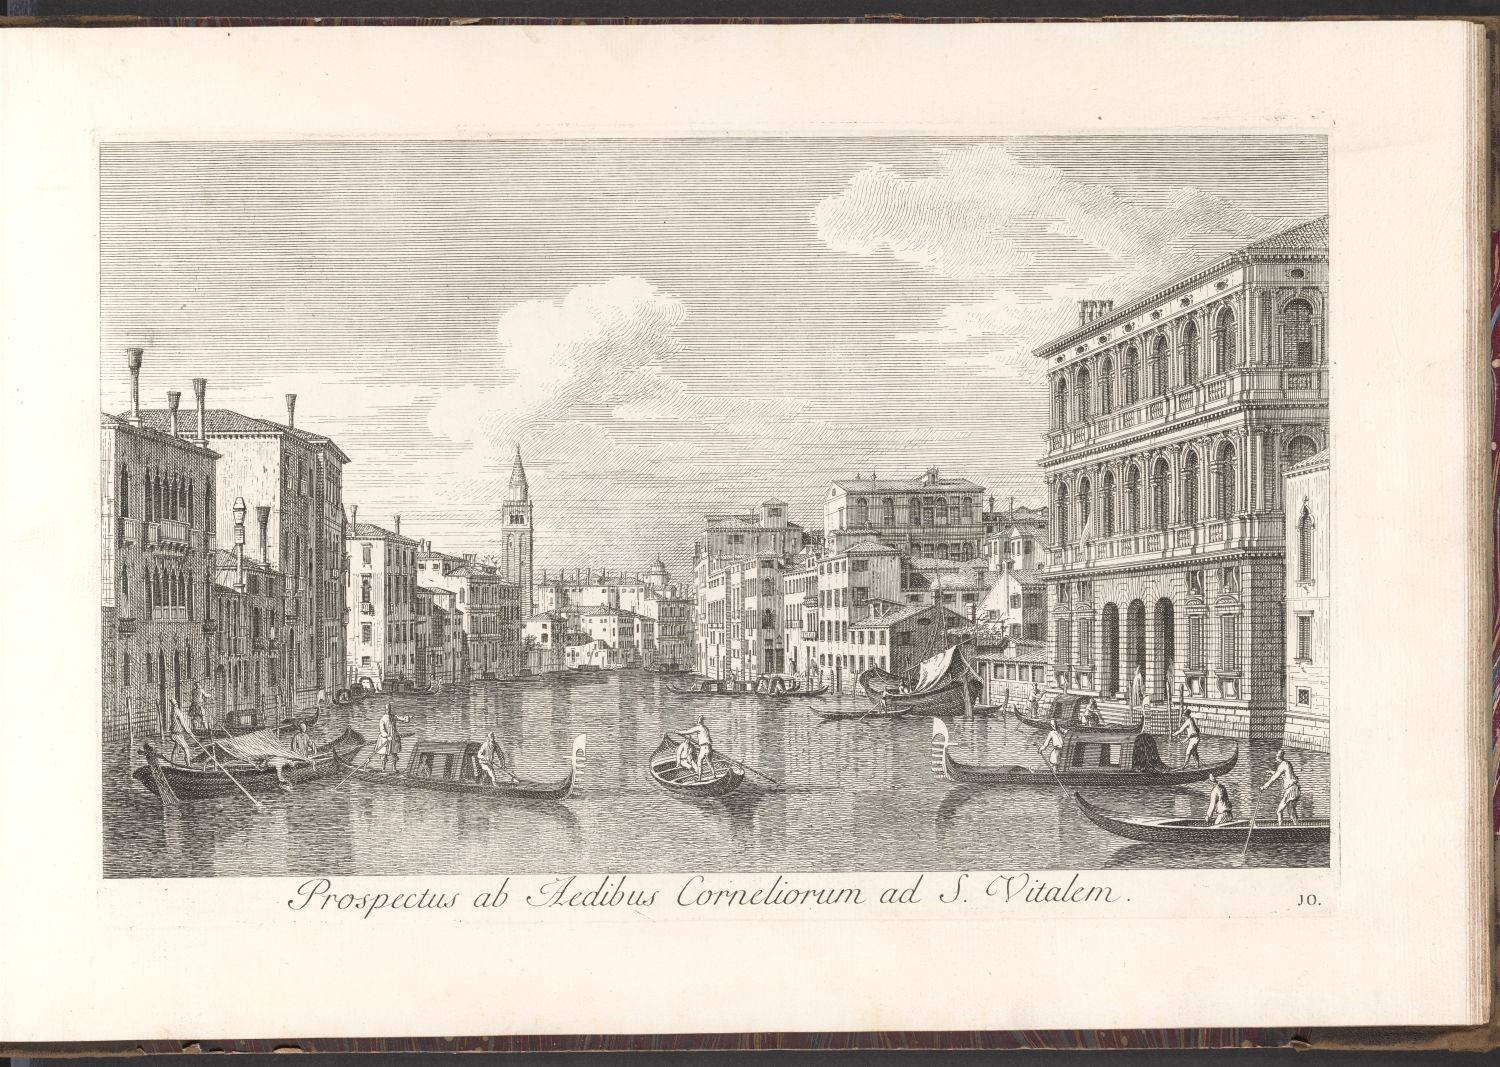 Venedig, 10. Prospectus ab Aedibus Corneliorum ad S. Vitalem. (Stiftung Händelhaus, Halle CC BY-NC-SA)